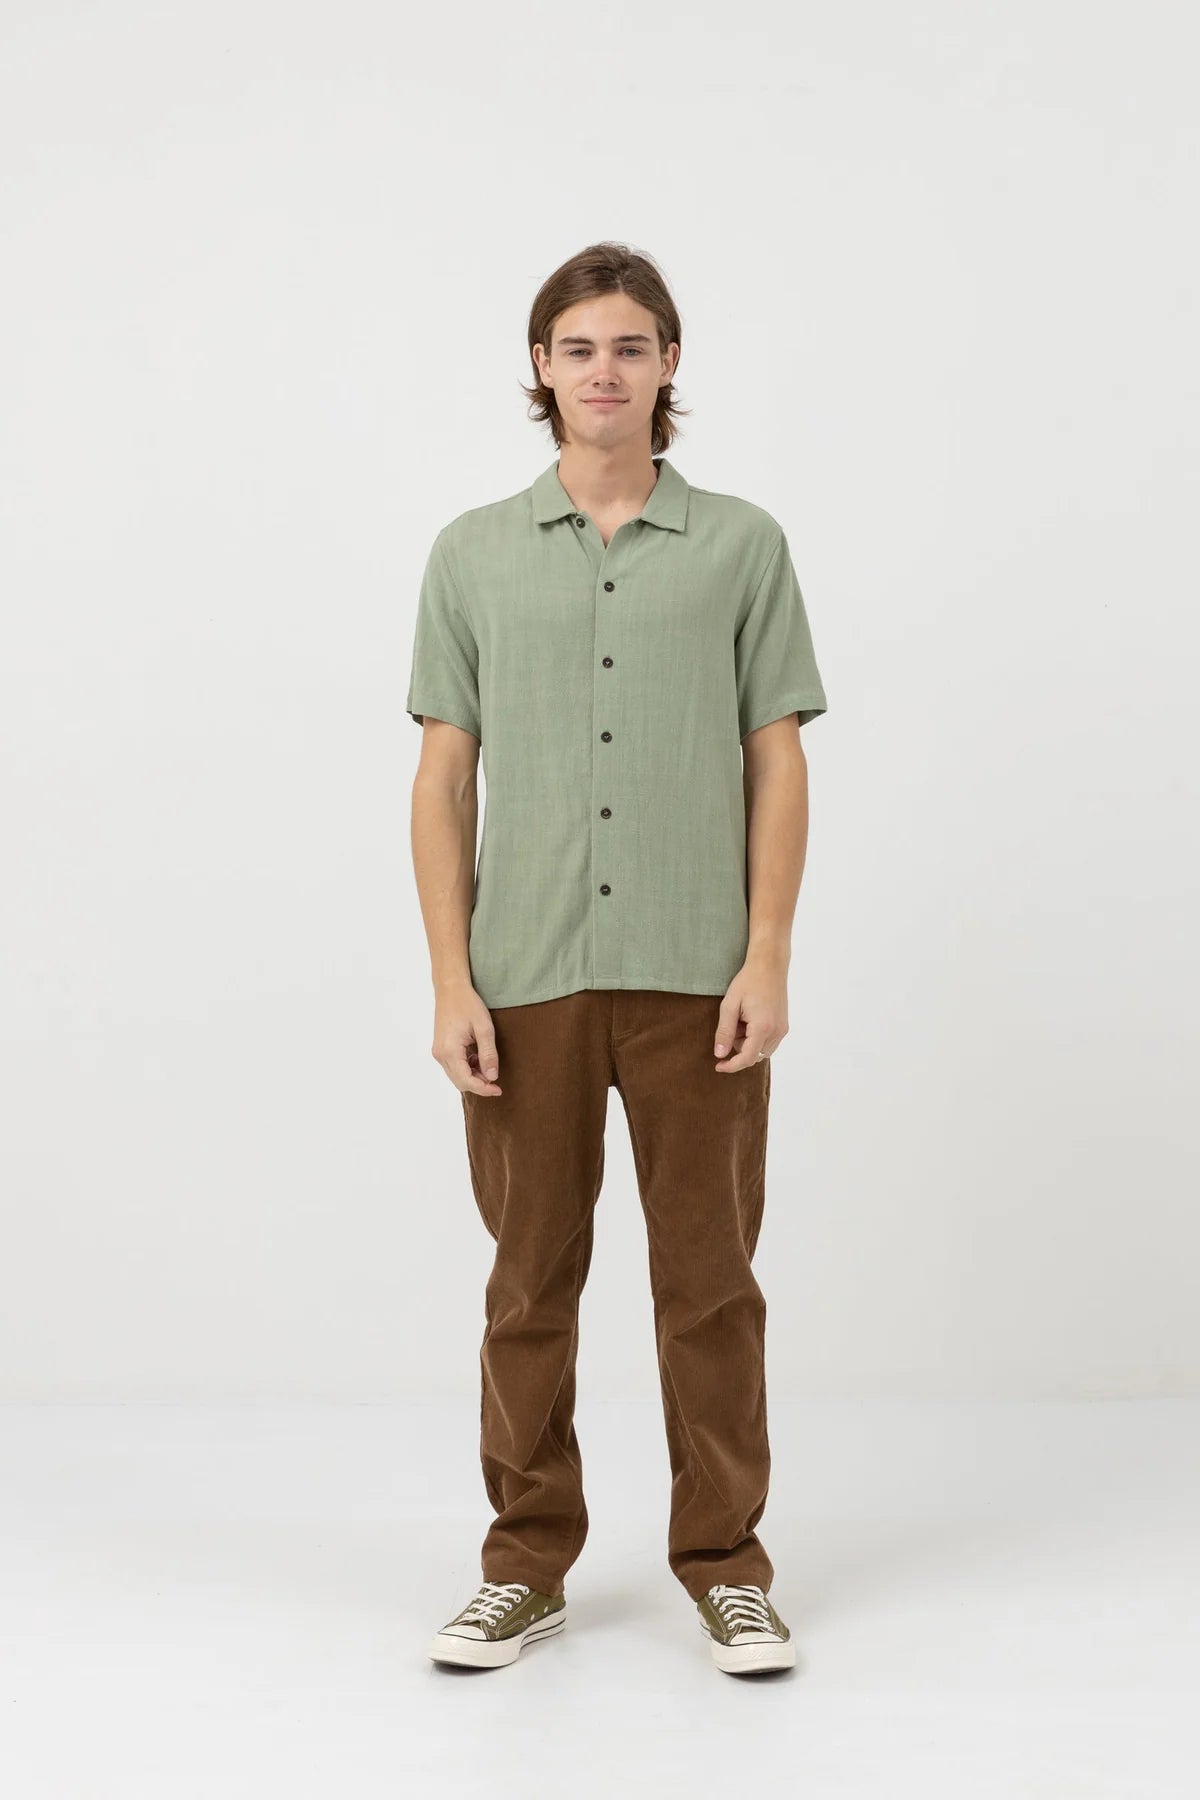 Rhythm Textured Linen Ss Shirt Moss | Collective Request 